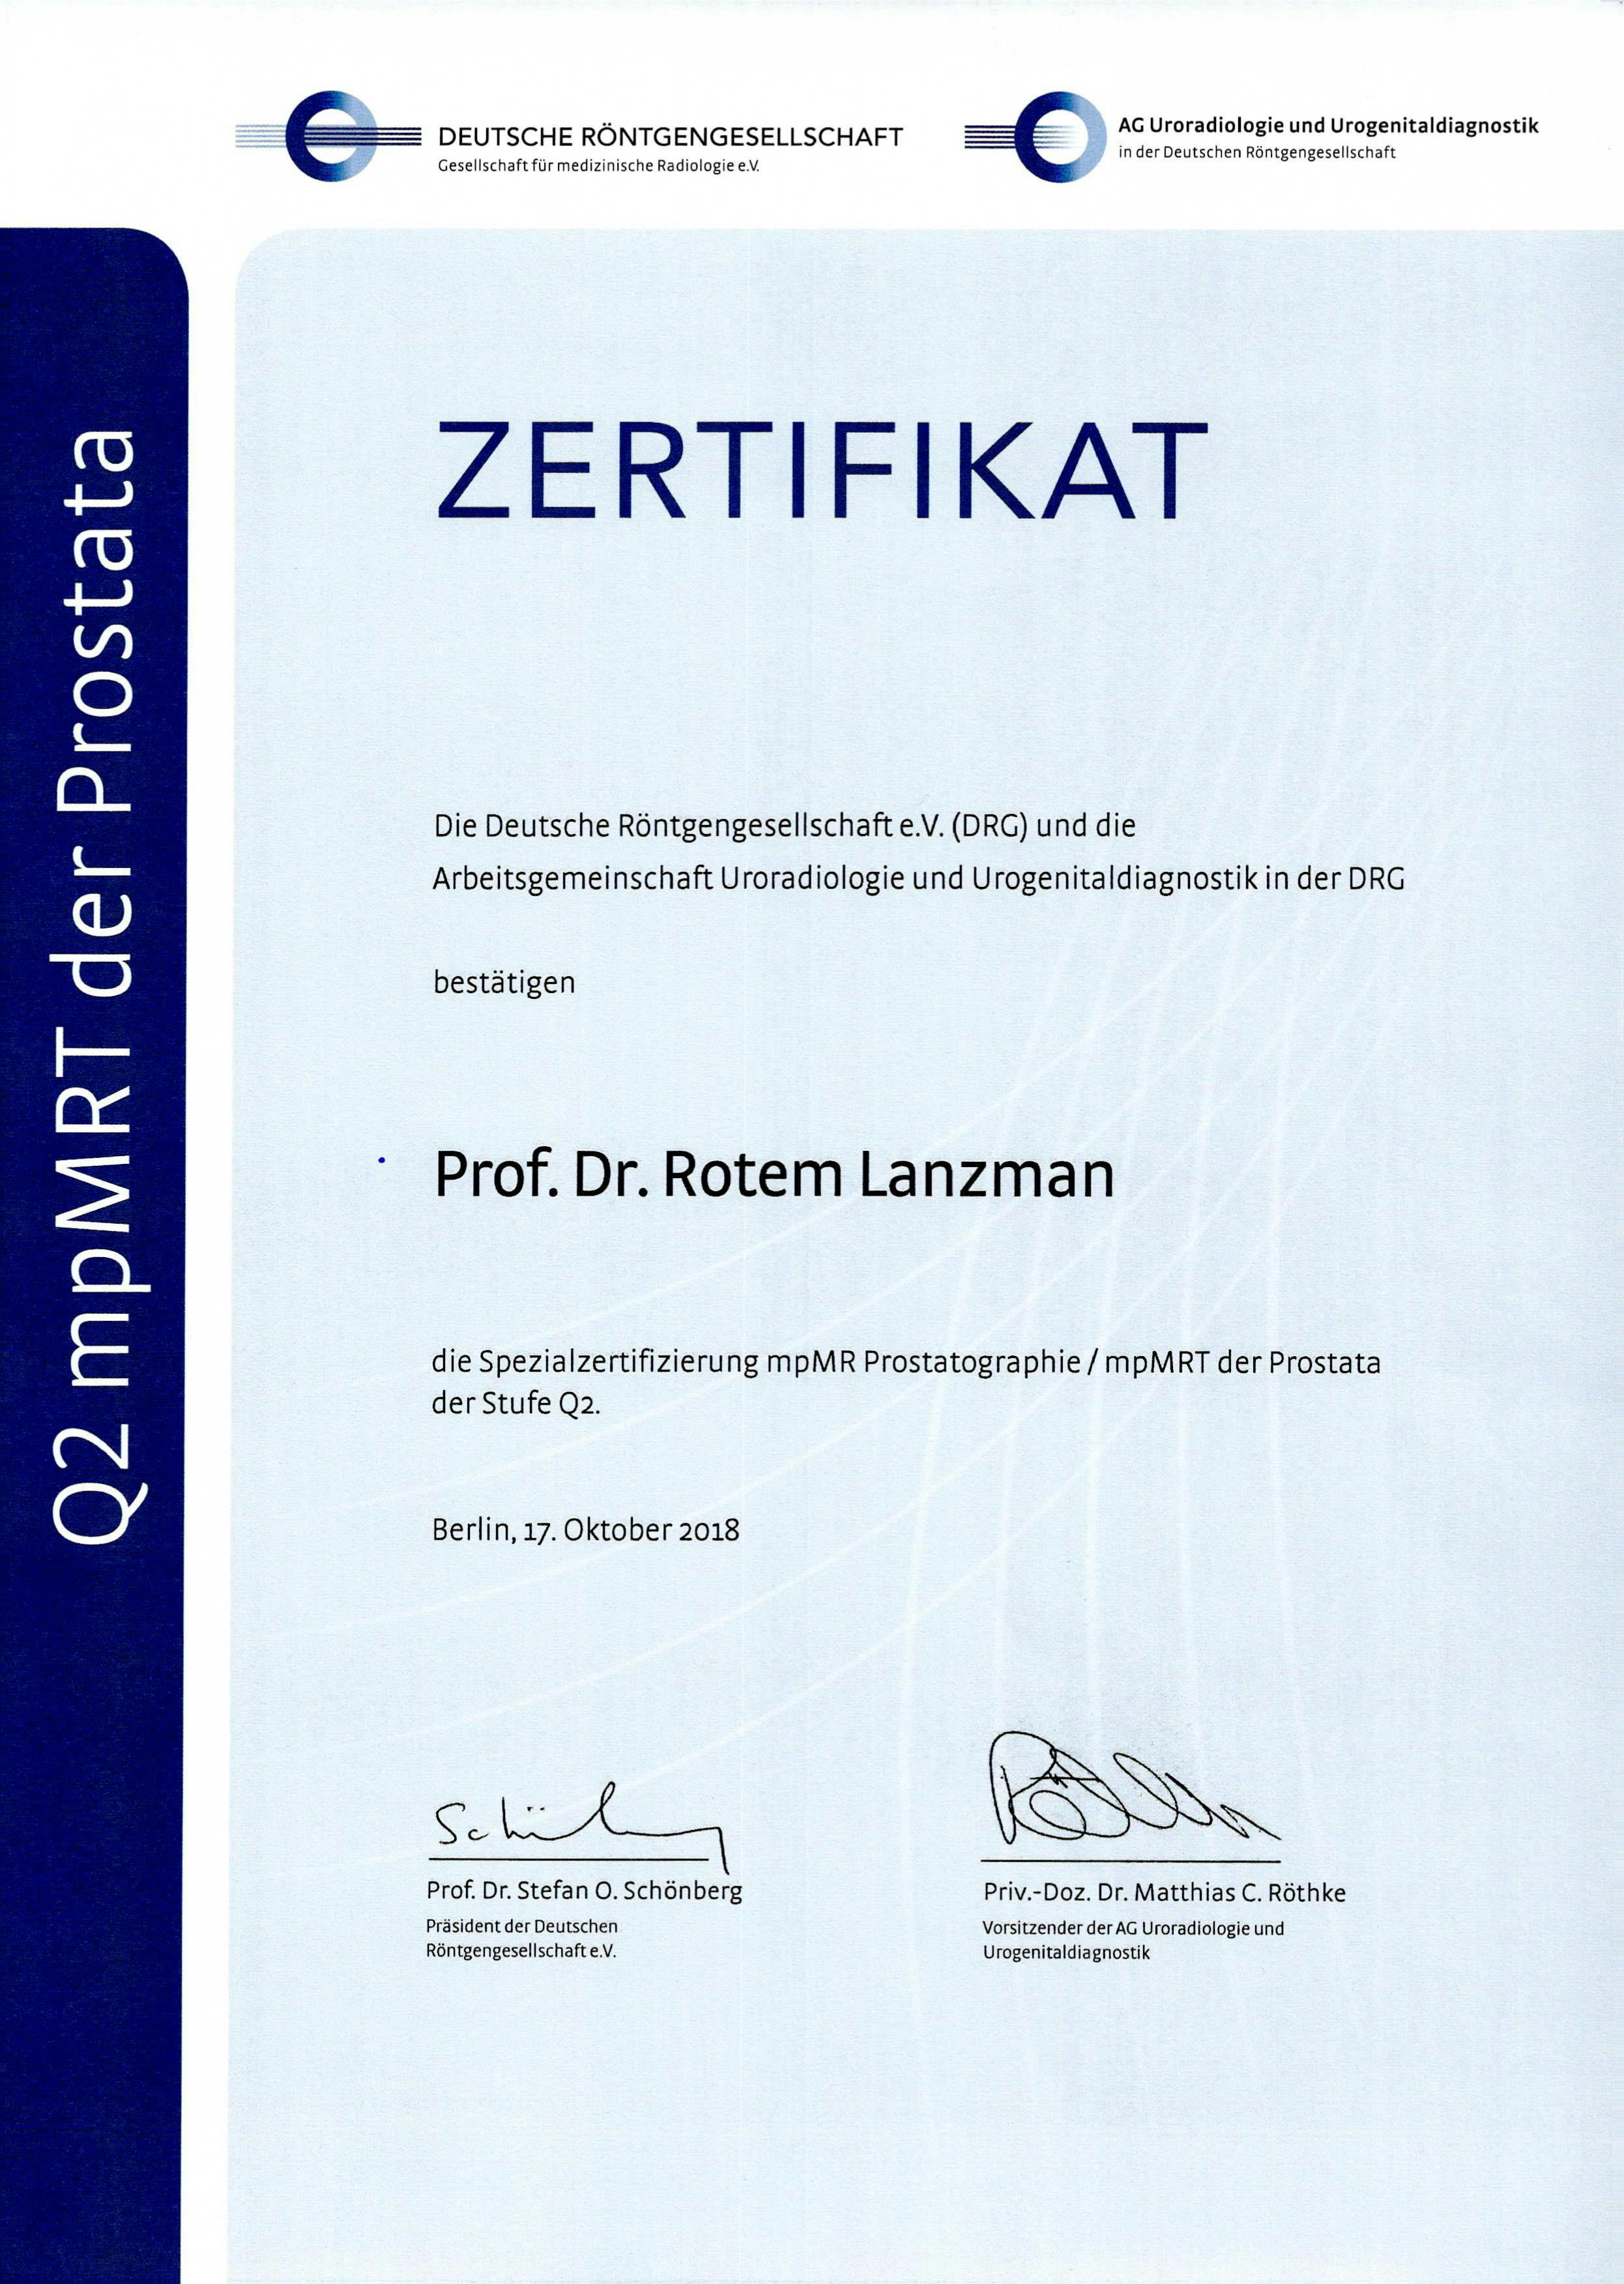 Zertifikat der Deutschen Röntgengesellschaft über die Spezialzertifizierung MRT der Prostata (Stufe Q2) für Professor Dr. med. Rotem Lanzman